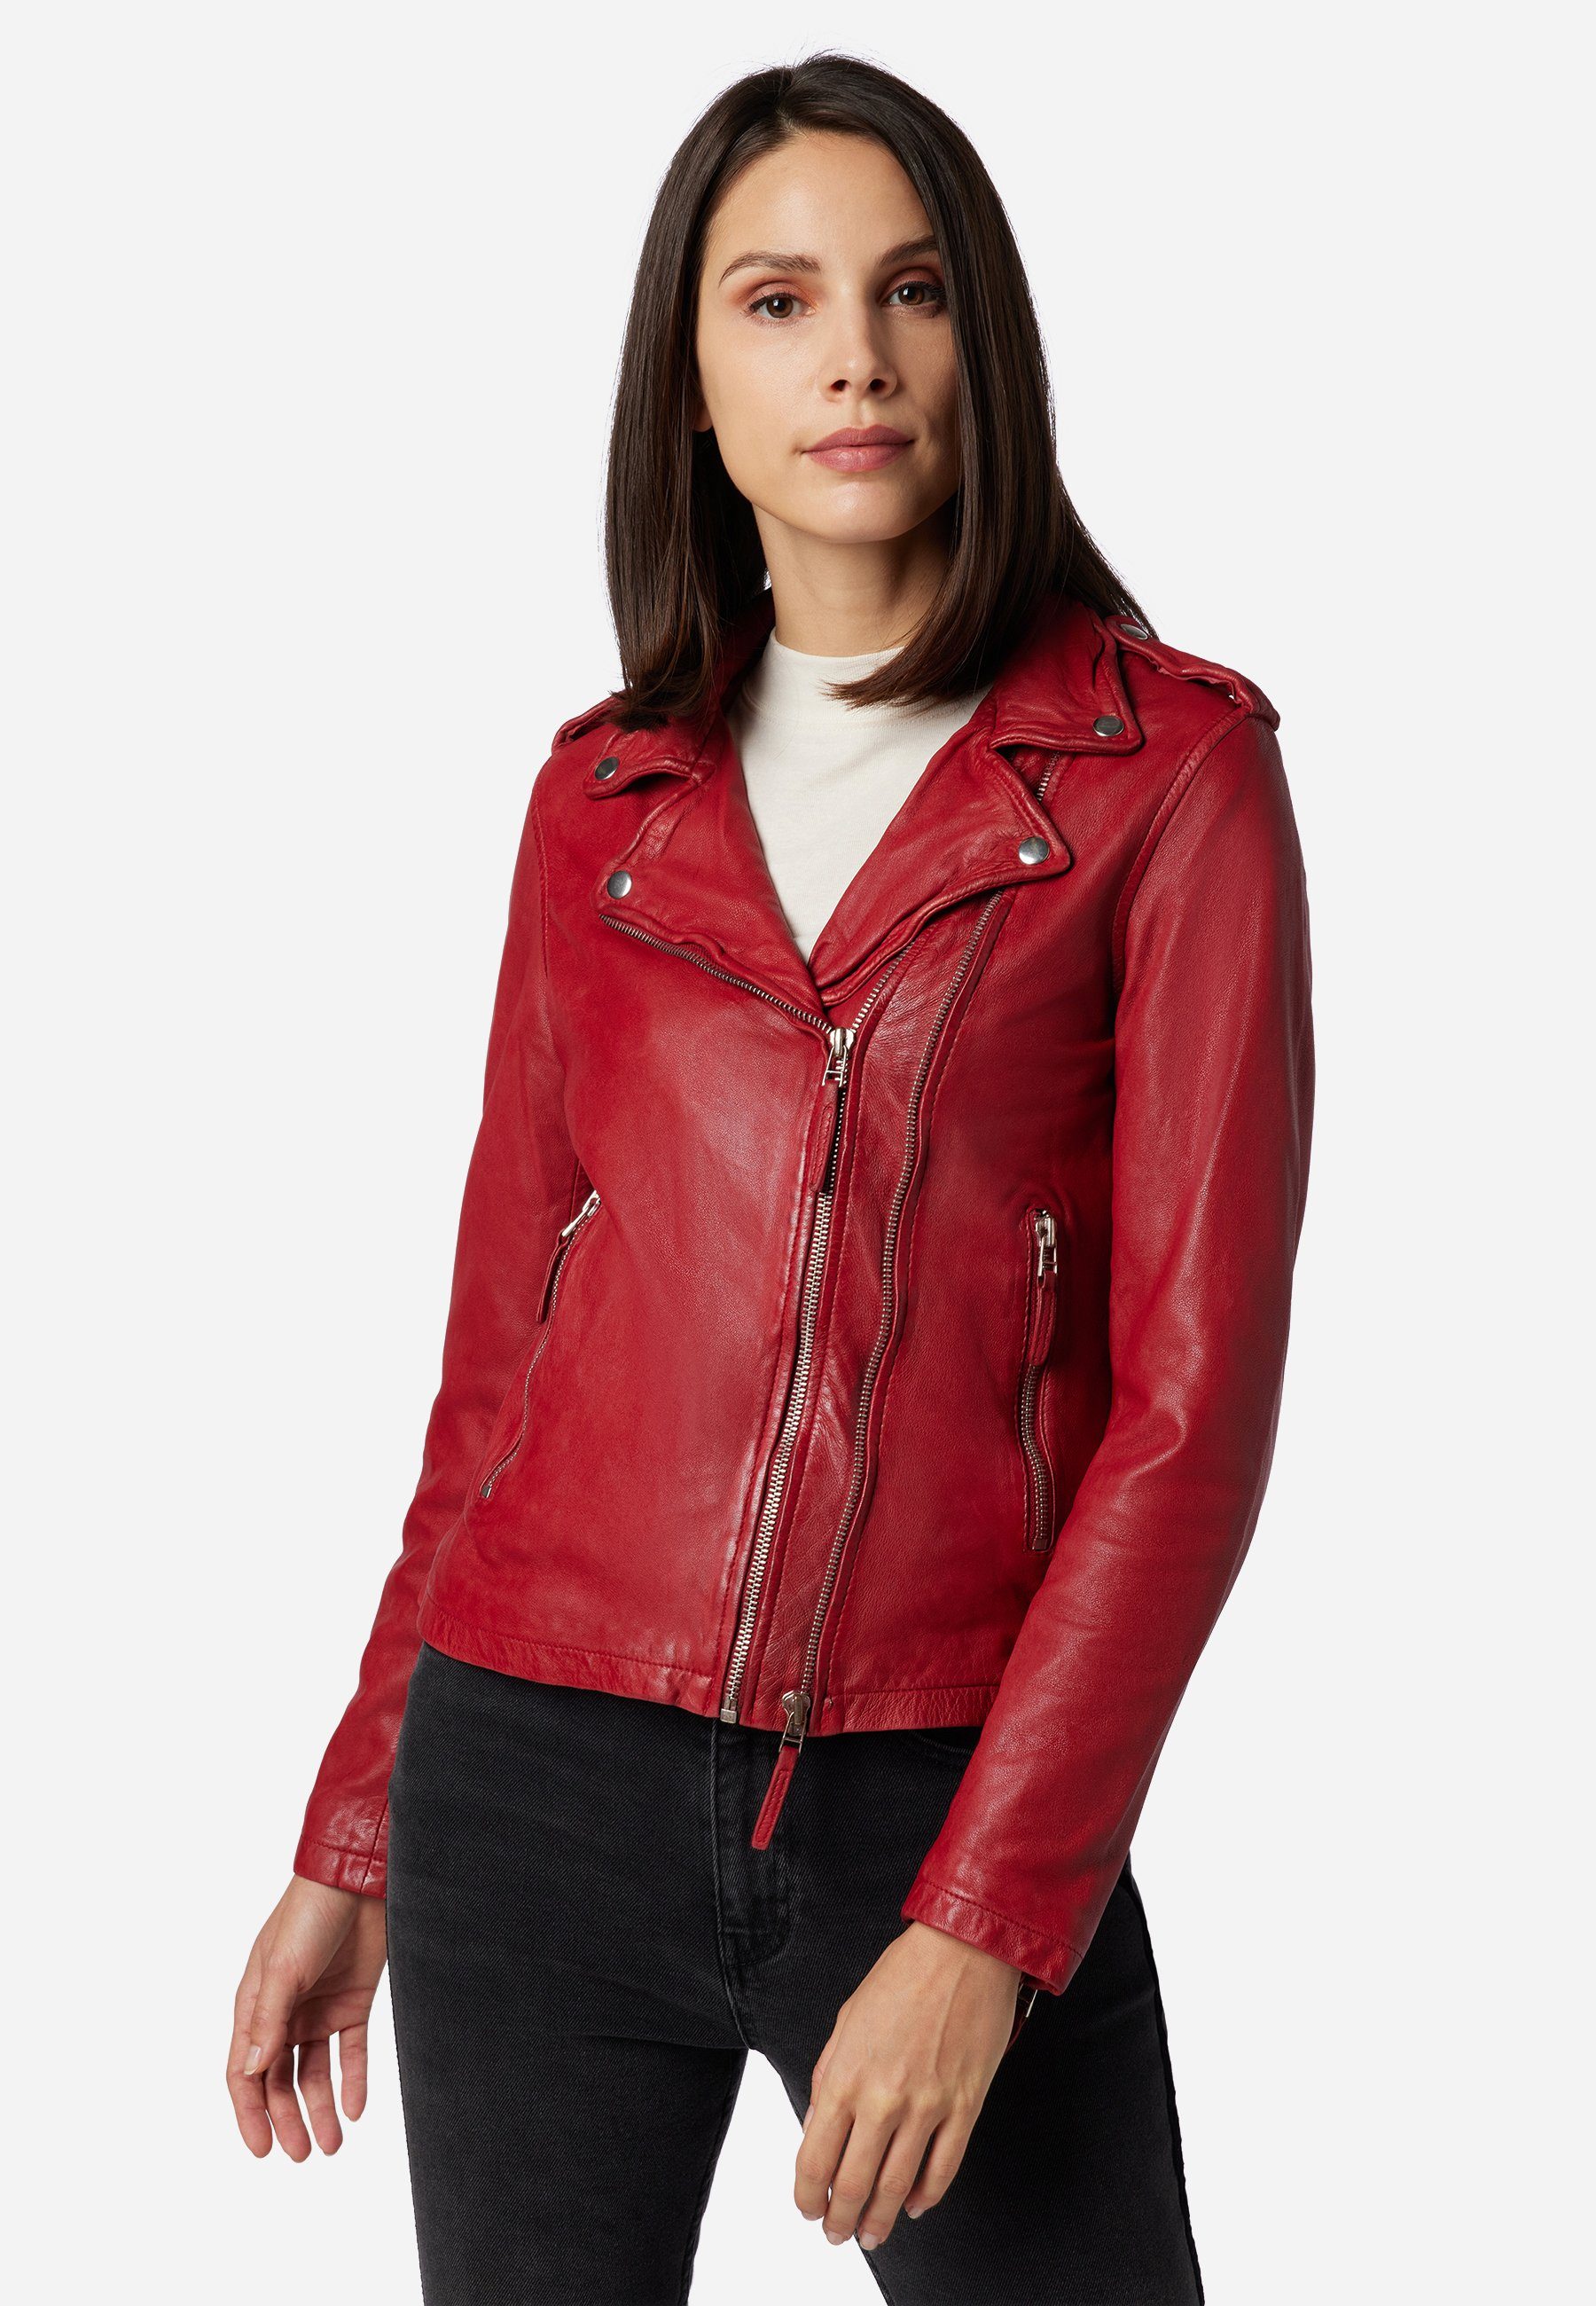 Damen Lederjacke in rot online kaufen | OTTO